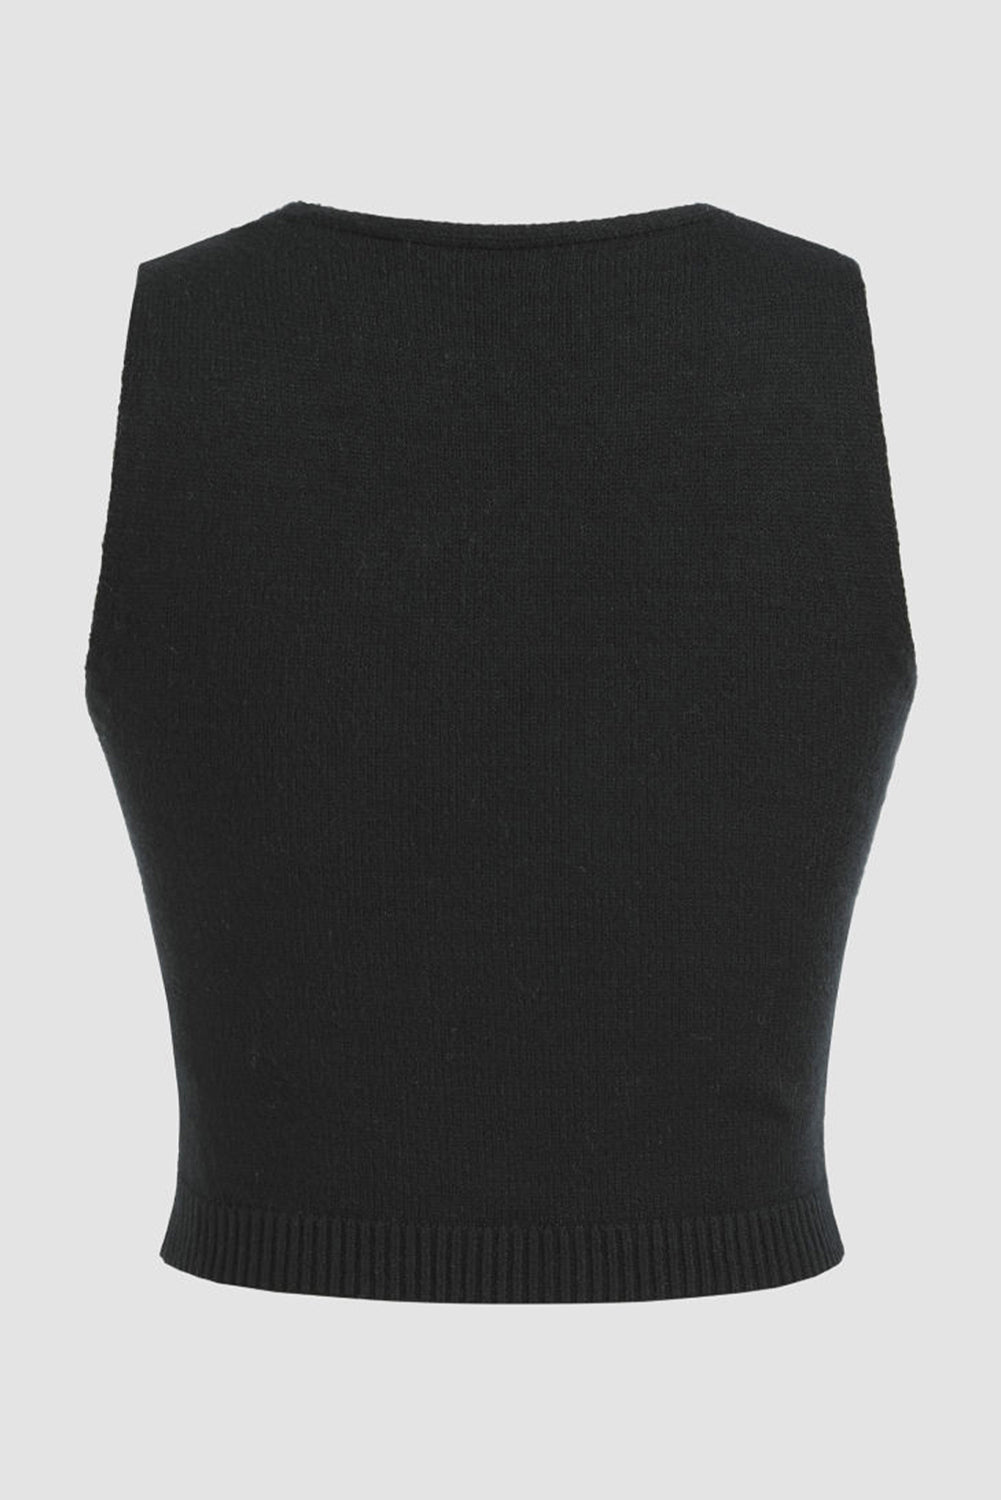 TEEK - Black Flower Scoop Neck Knit Vest TOPS TEEK Trend   